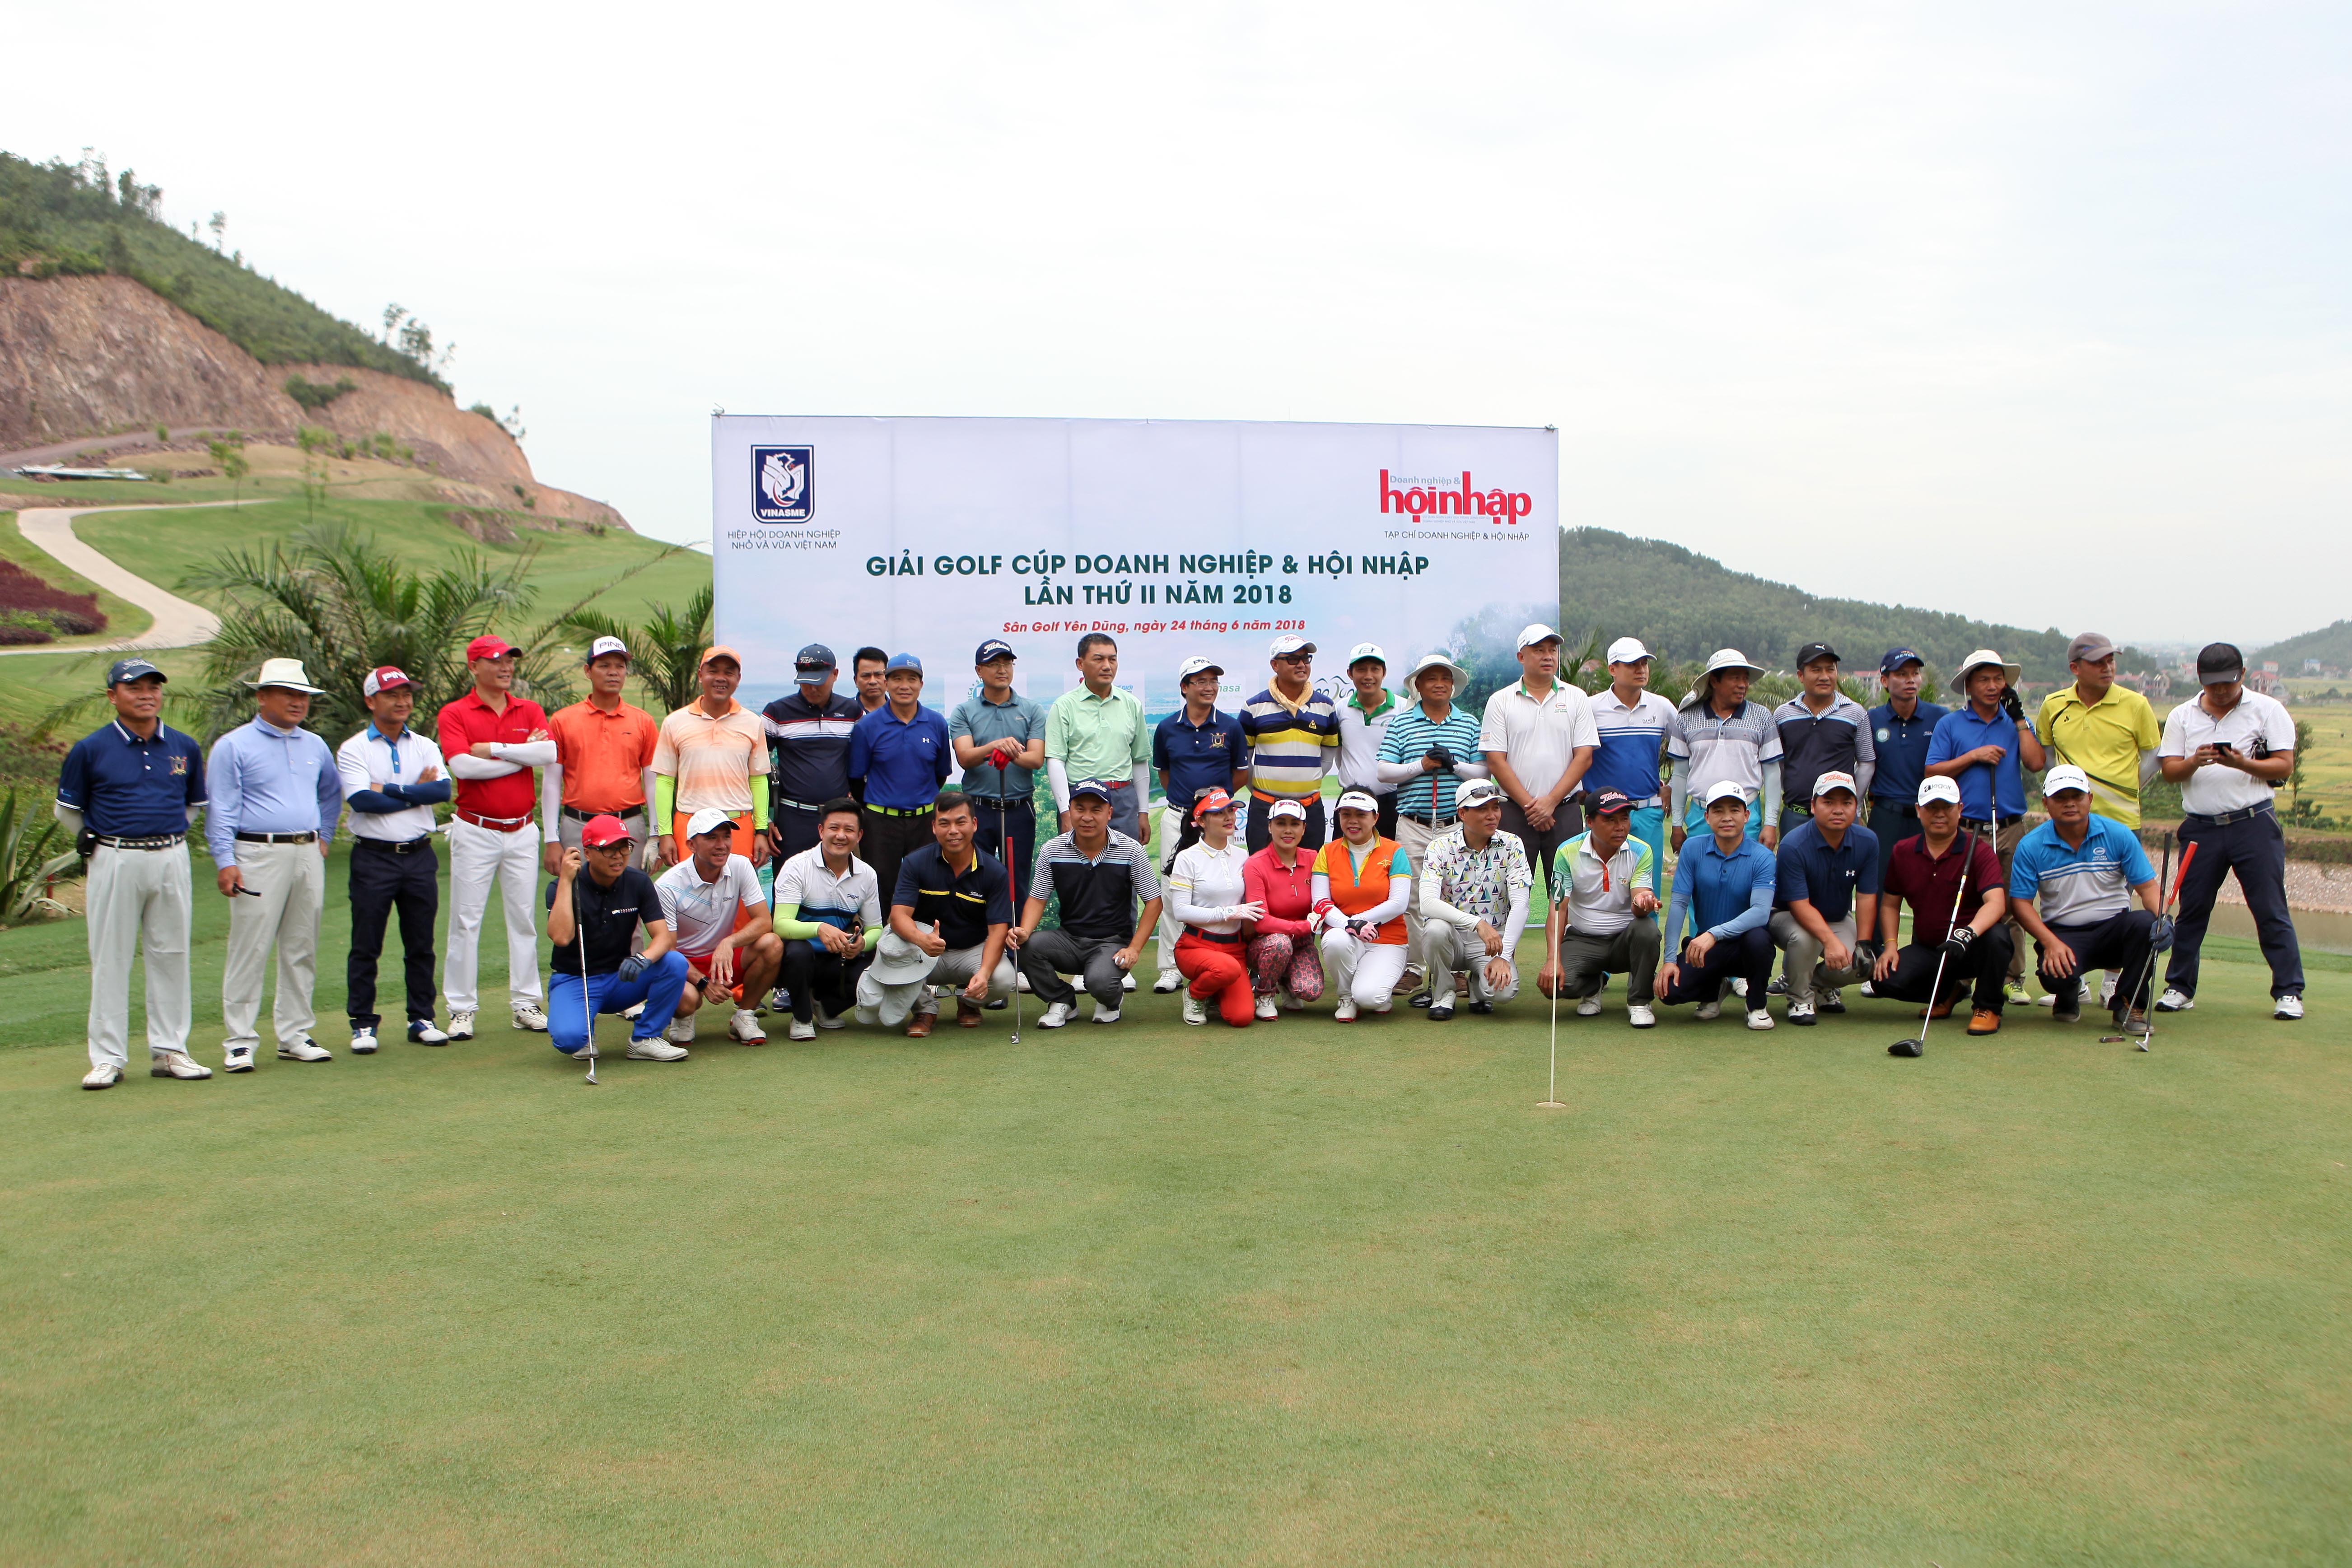 140 golfers tham dự Giải golf Tranh cúp Doanh nghiệp - Hội nhập Lần thứ II